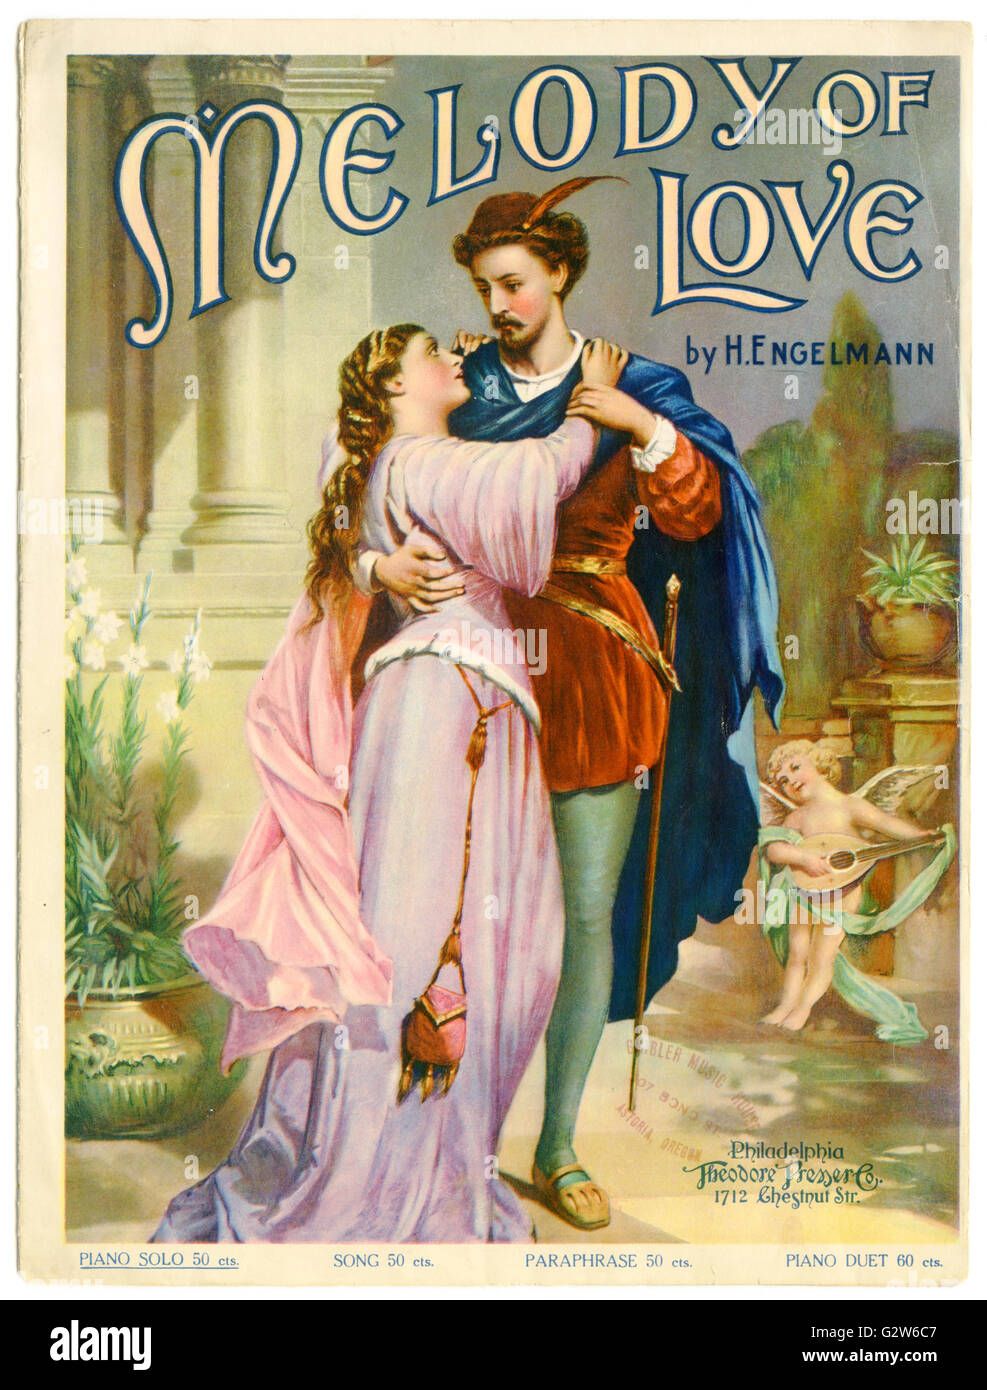 Partitions pour piano cover pour "Mélodie d'amour" par H. Engelmann. Publié par Theodore Presser Co., Philadelphia, 1902 Banque D'Images